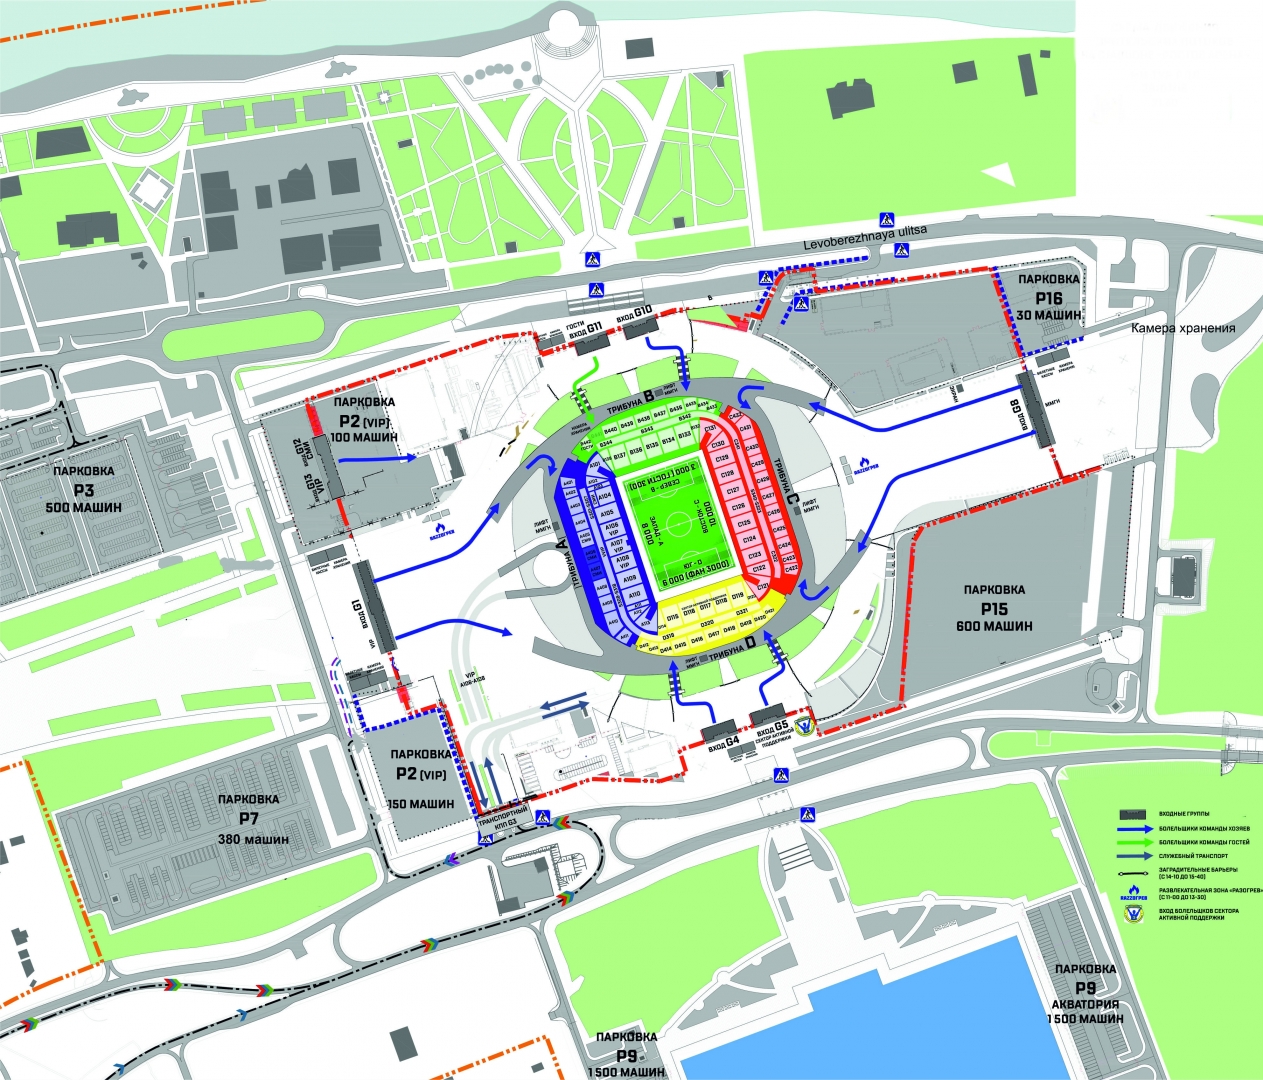 Карта стадиона арена